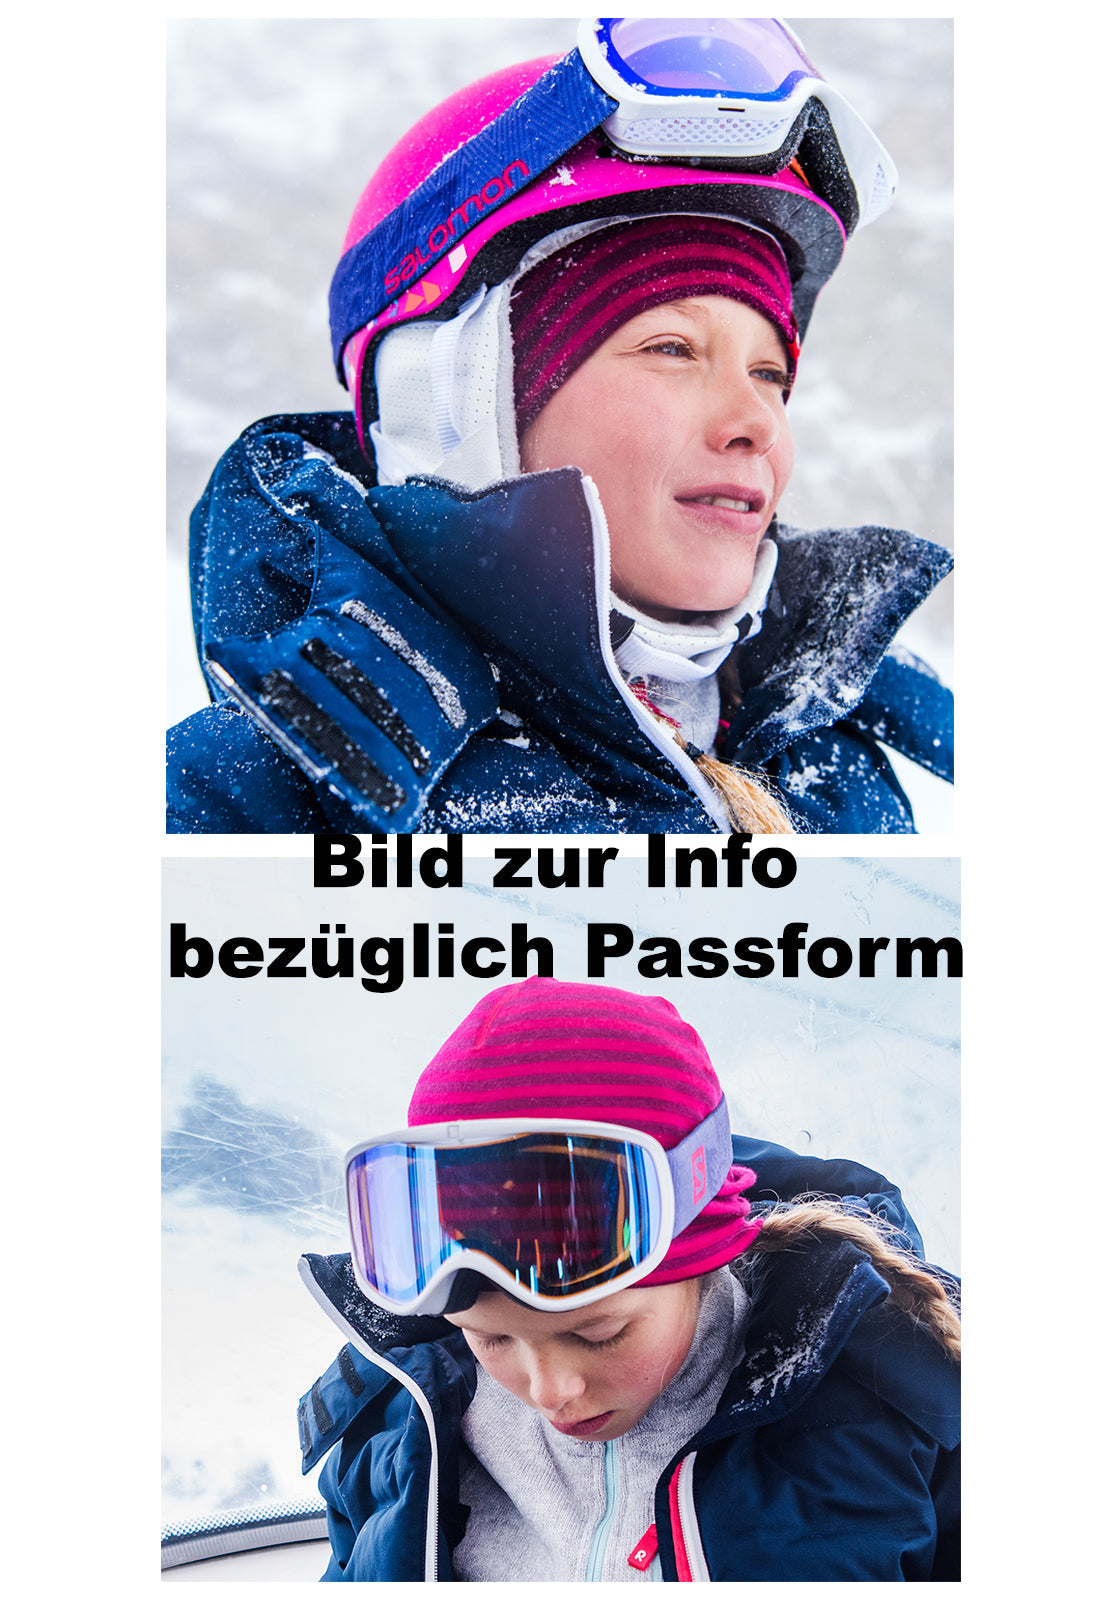 Reima Mädchen Mütze AKTIONSFARBE<br> Dimma <br>Gr. 48/50, 56/58 <br>hautfreundliche, feinste Merino-Wolle<br> dünn, auch ideal für unter Ski/Velo-Helm<br> sehr atmungsaktiv<br> ganzjährig geeignet